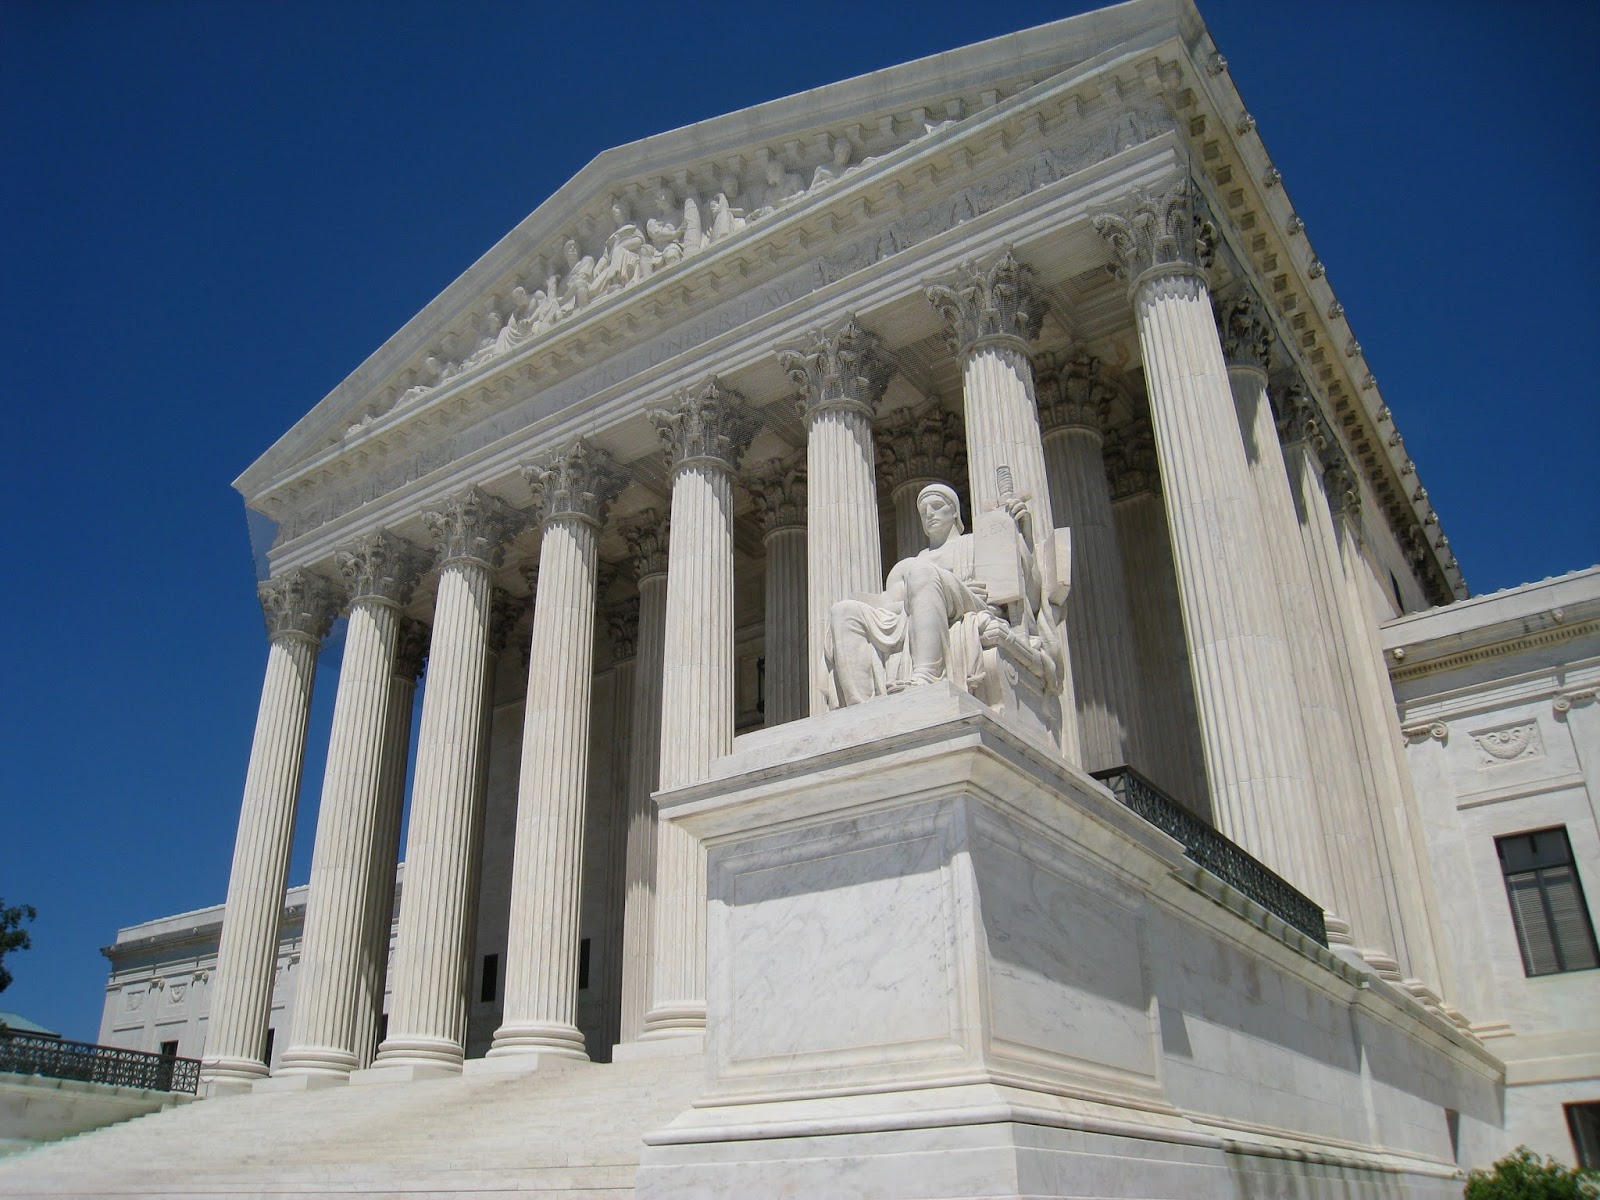 ΗΠΑ: Με σημαντικές αποφάσεις θα τερματιστεί η δικαστική περίοδος του Ανωτάτου Δικαστηρίου